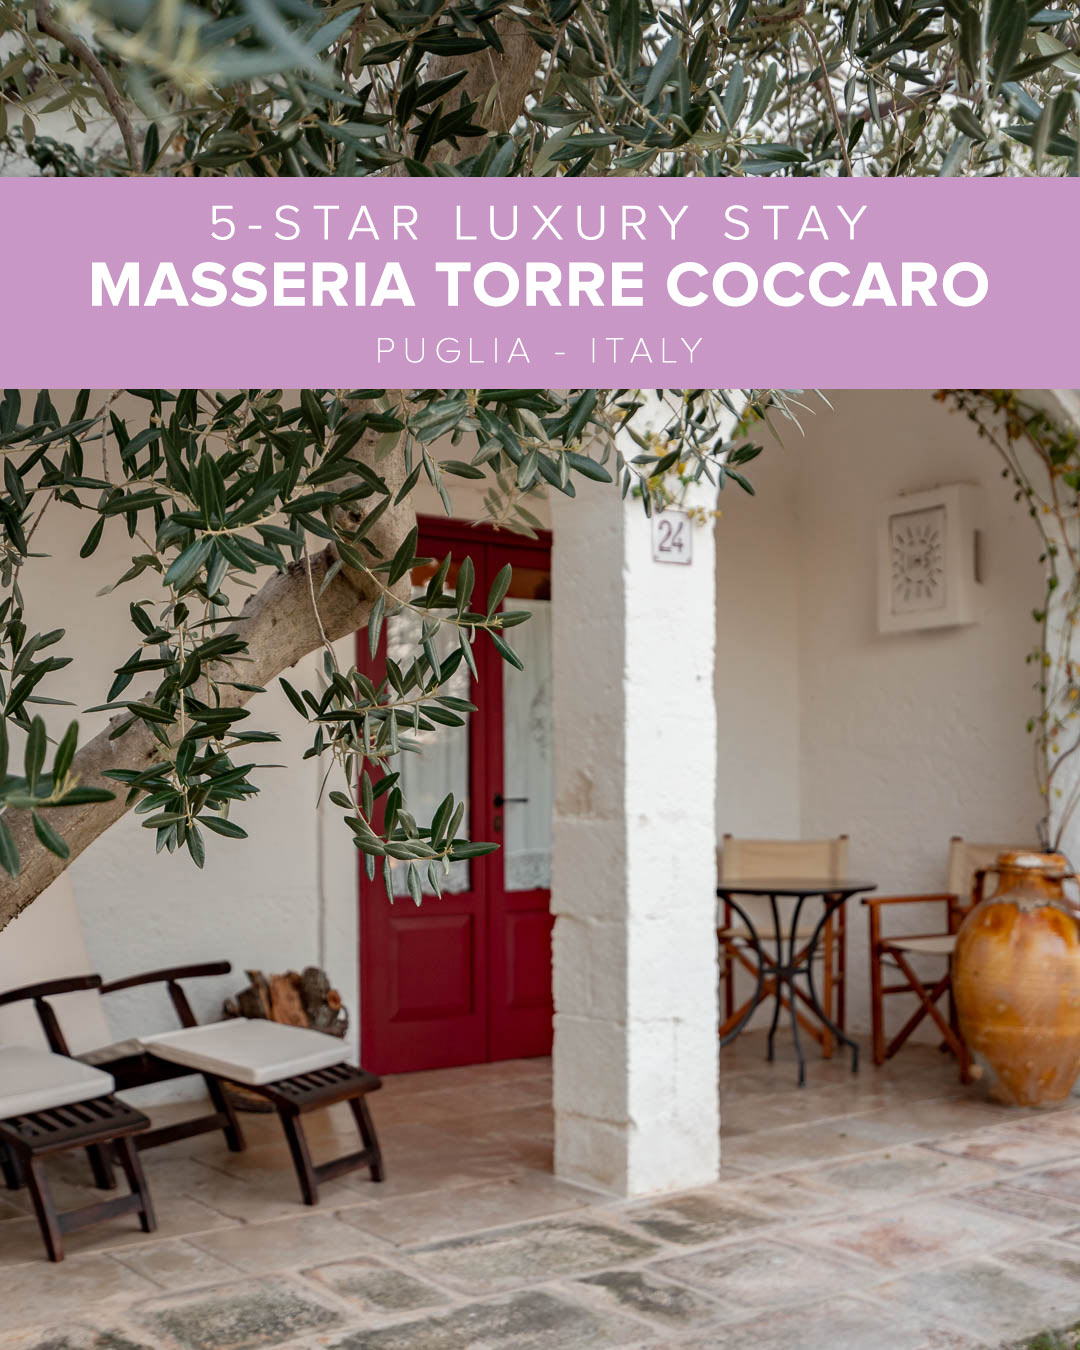 5-Star Luxury Stay in Masseria Torre Coccaro - Puglia